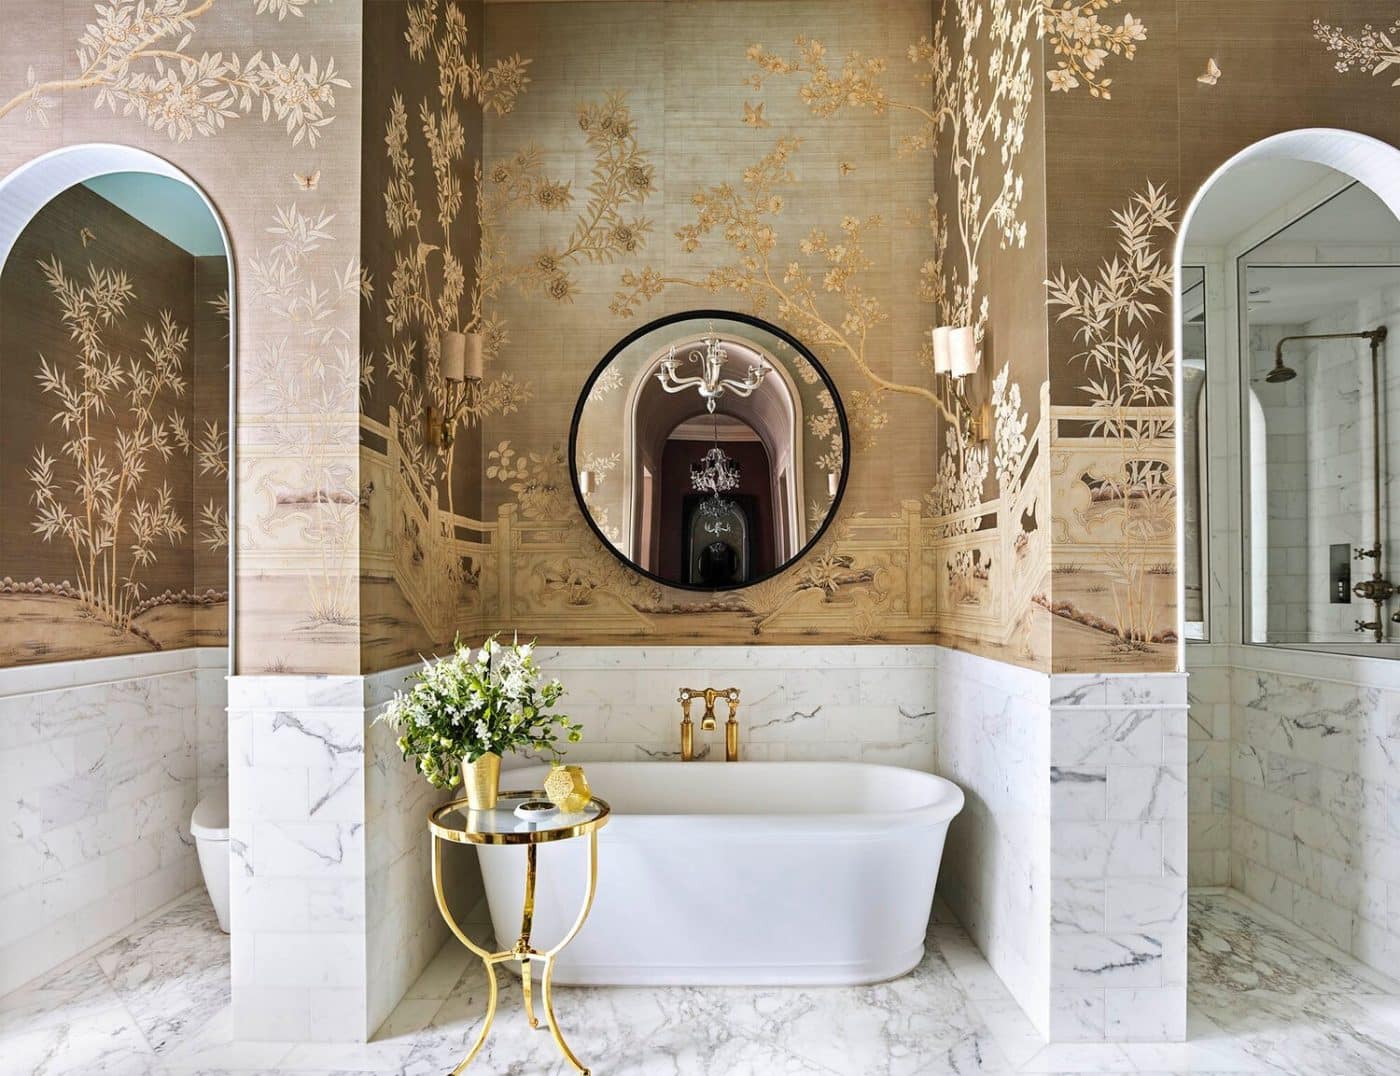 Glamorous bathroom designed by Eddie Lee